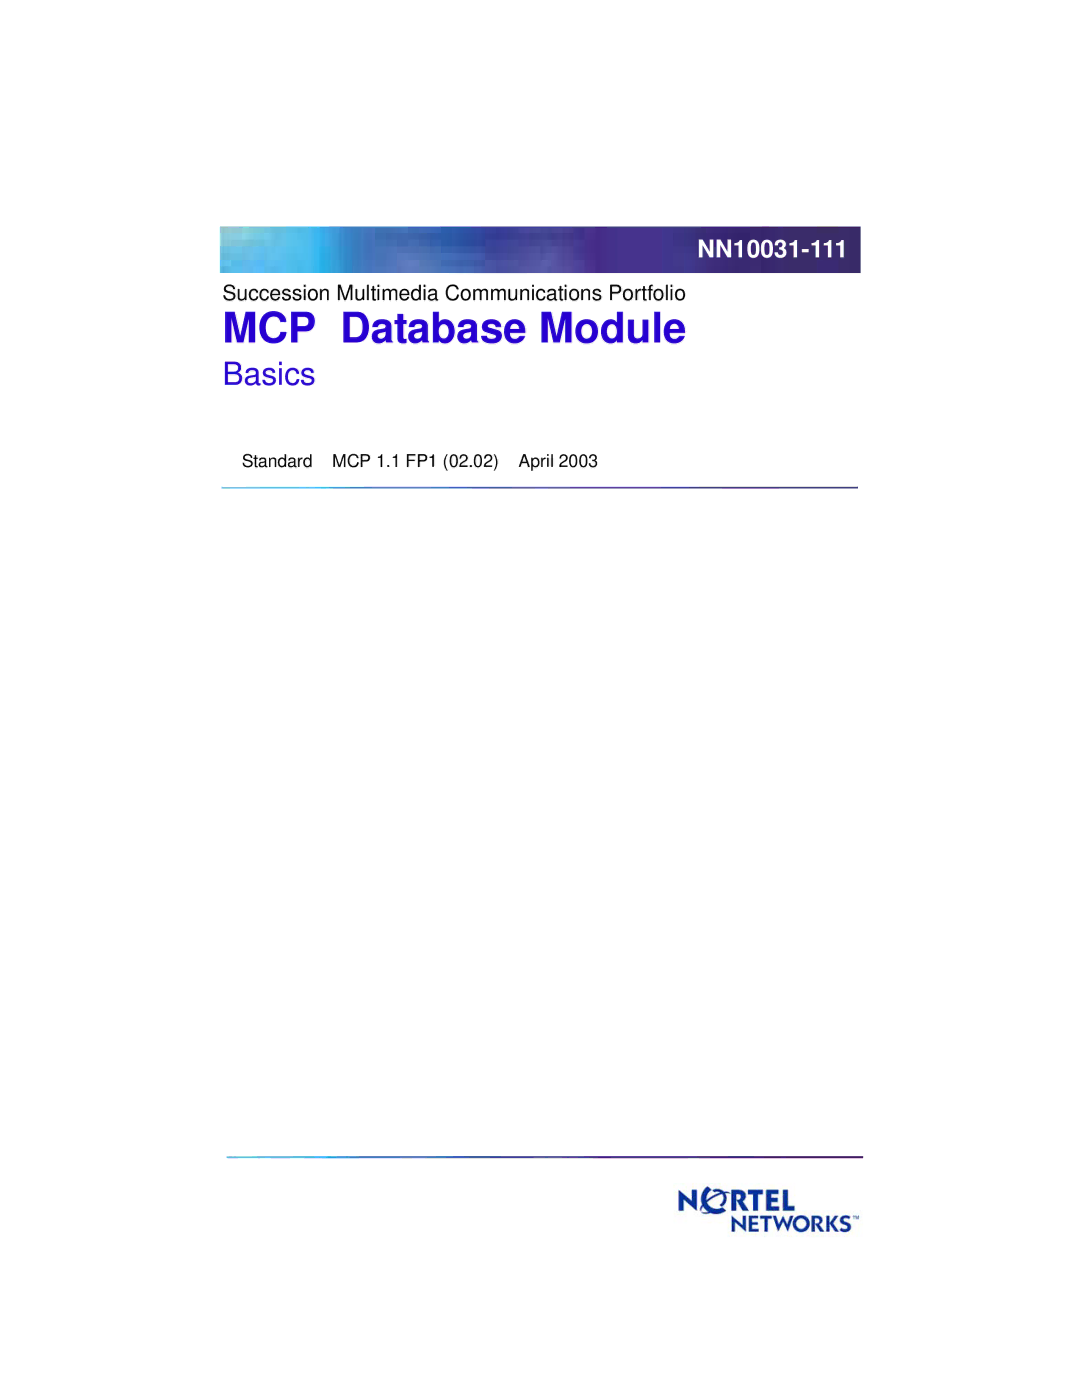 Nortel Networks Standard MCP 1.1 FP1 (02.02) manual MCP Database Module 